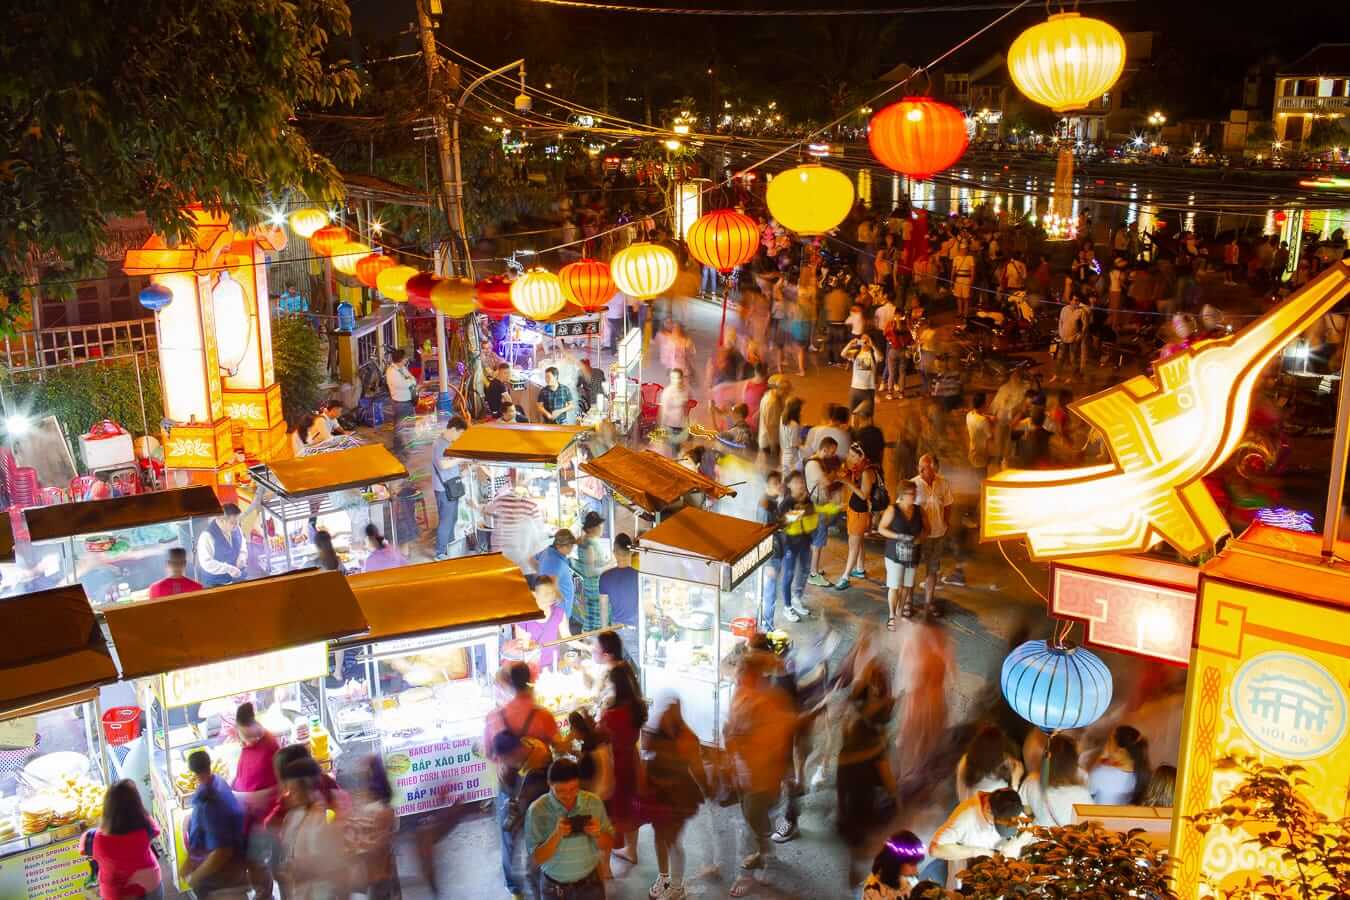 Hoi An Night Market - Address, Schedule & Guide - Jacky Vietnam Travel